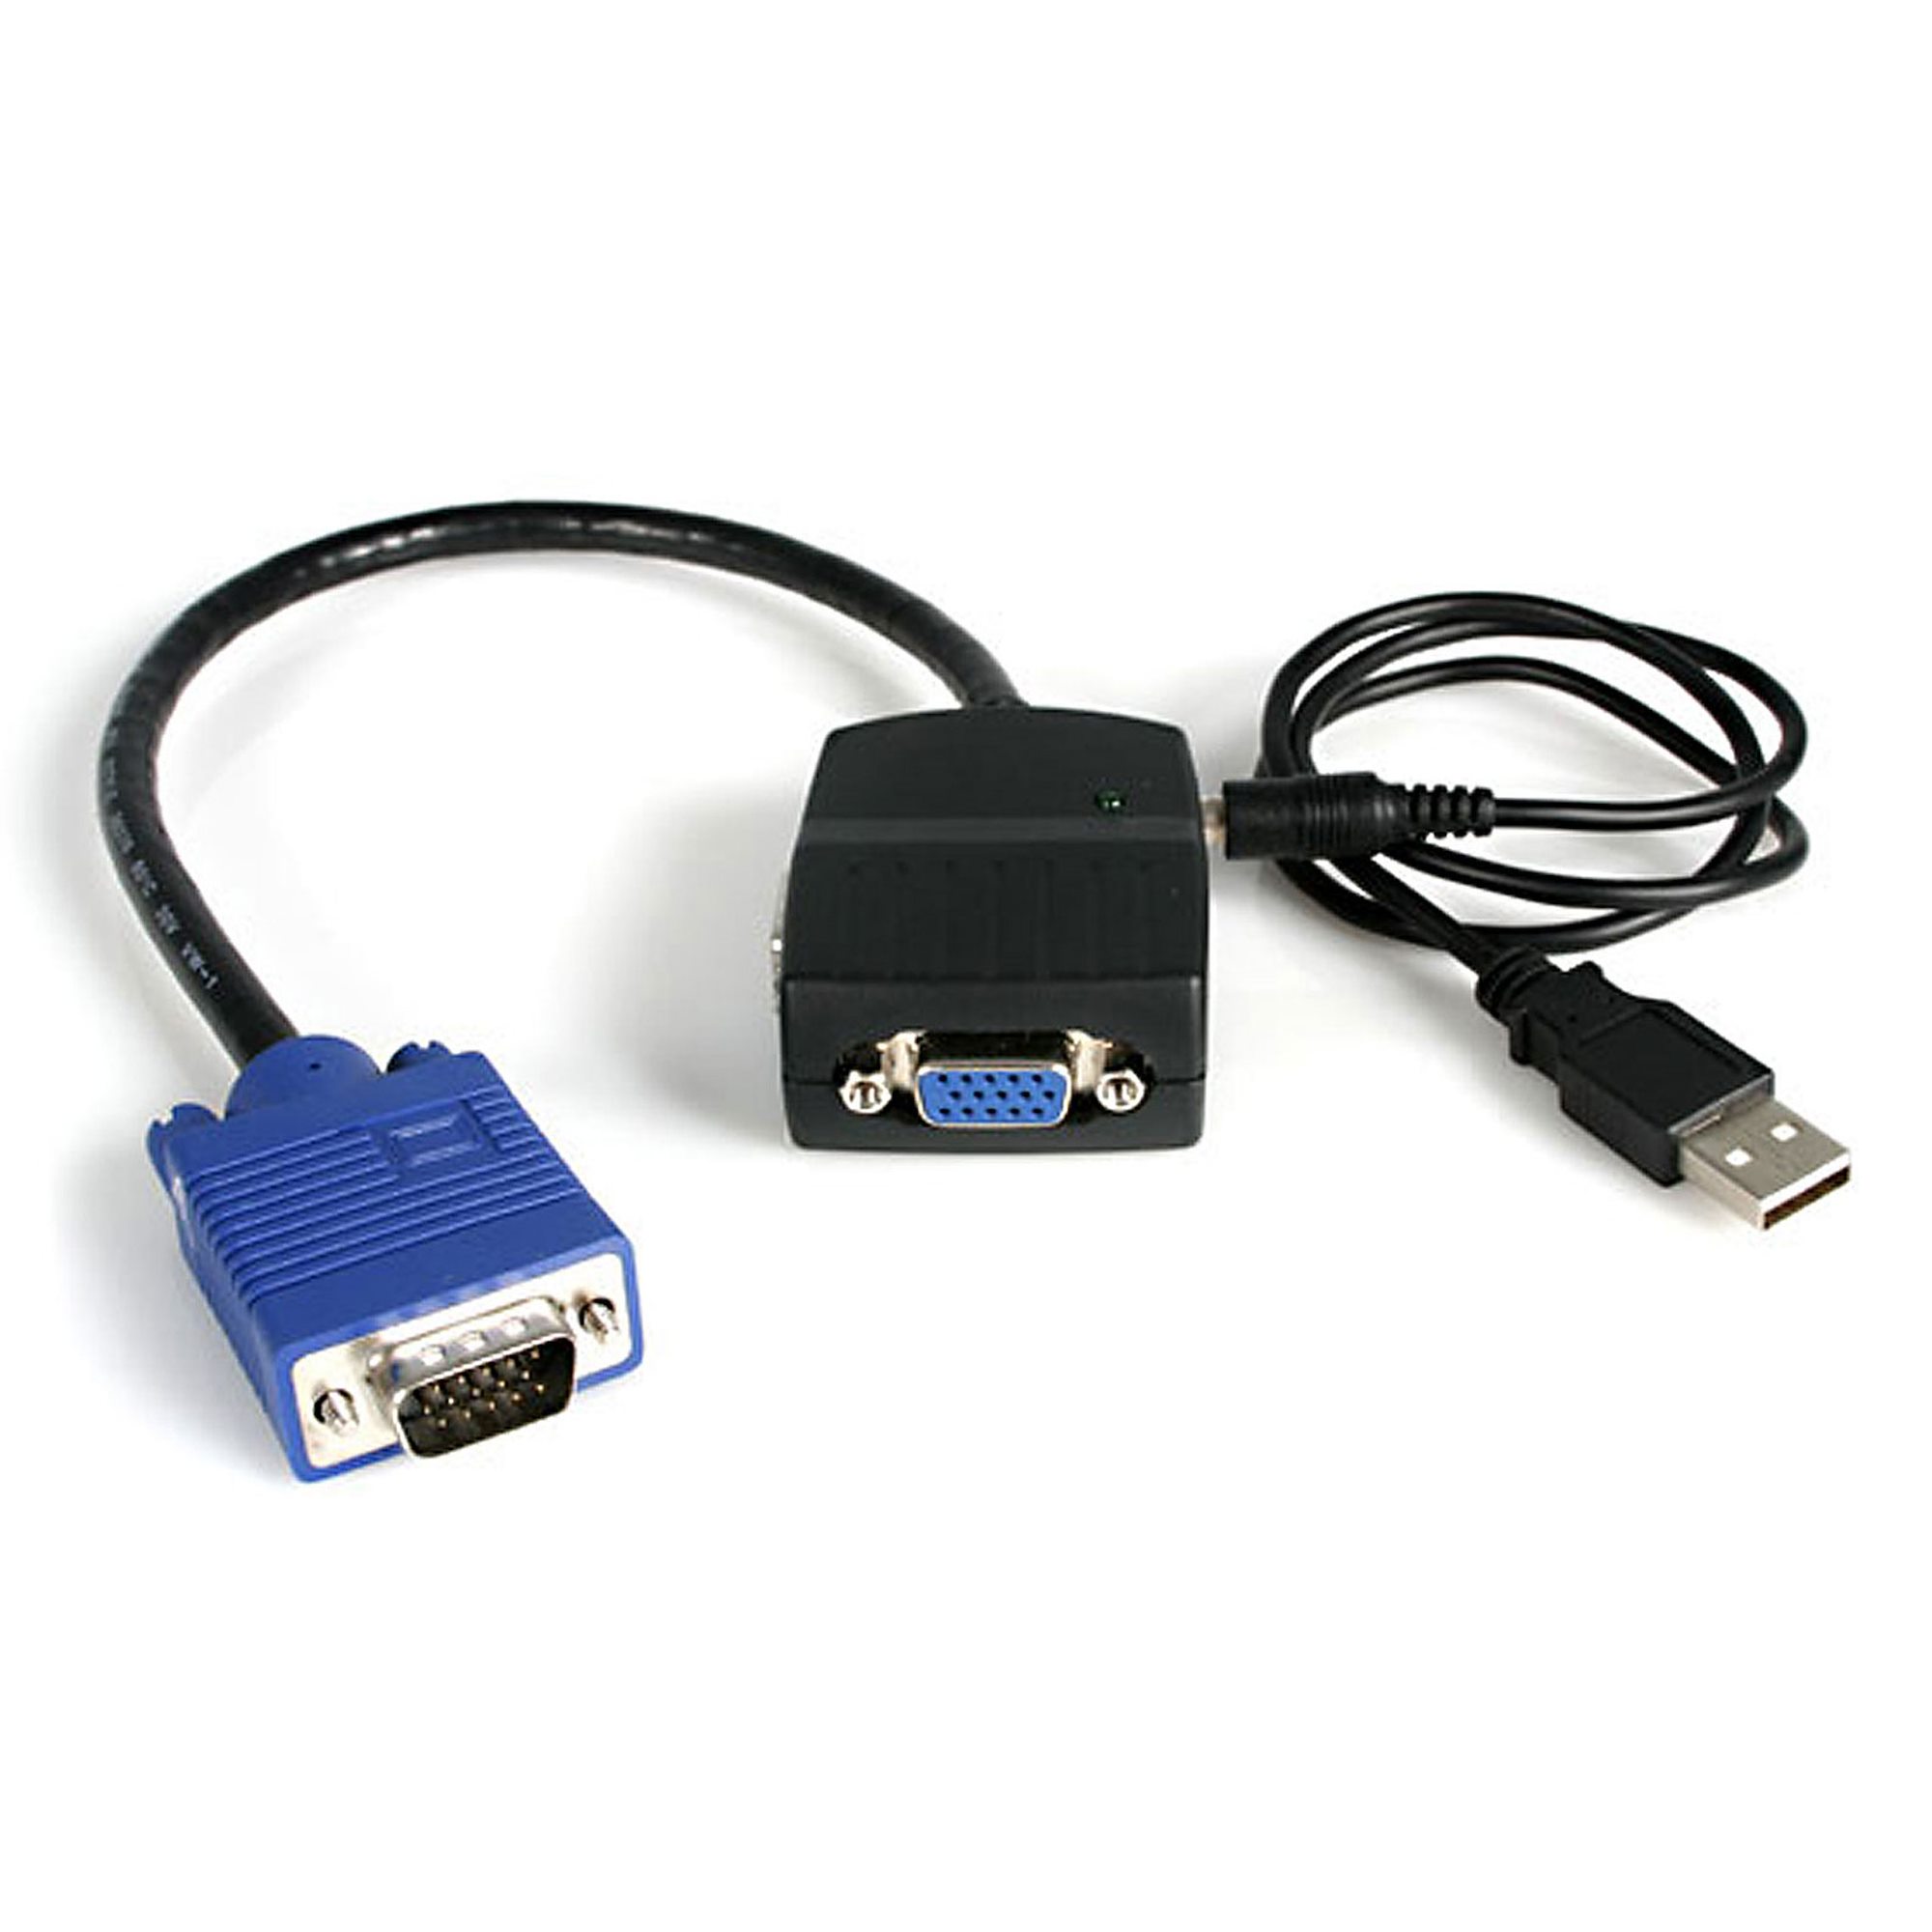 plyndringer Kvittering Wings 2 Port VGA Video Splitter - USB Powered - VGA Splitters | StarTech.com